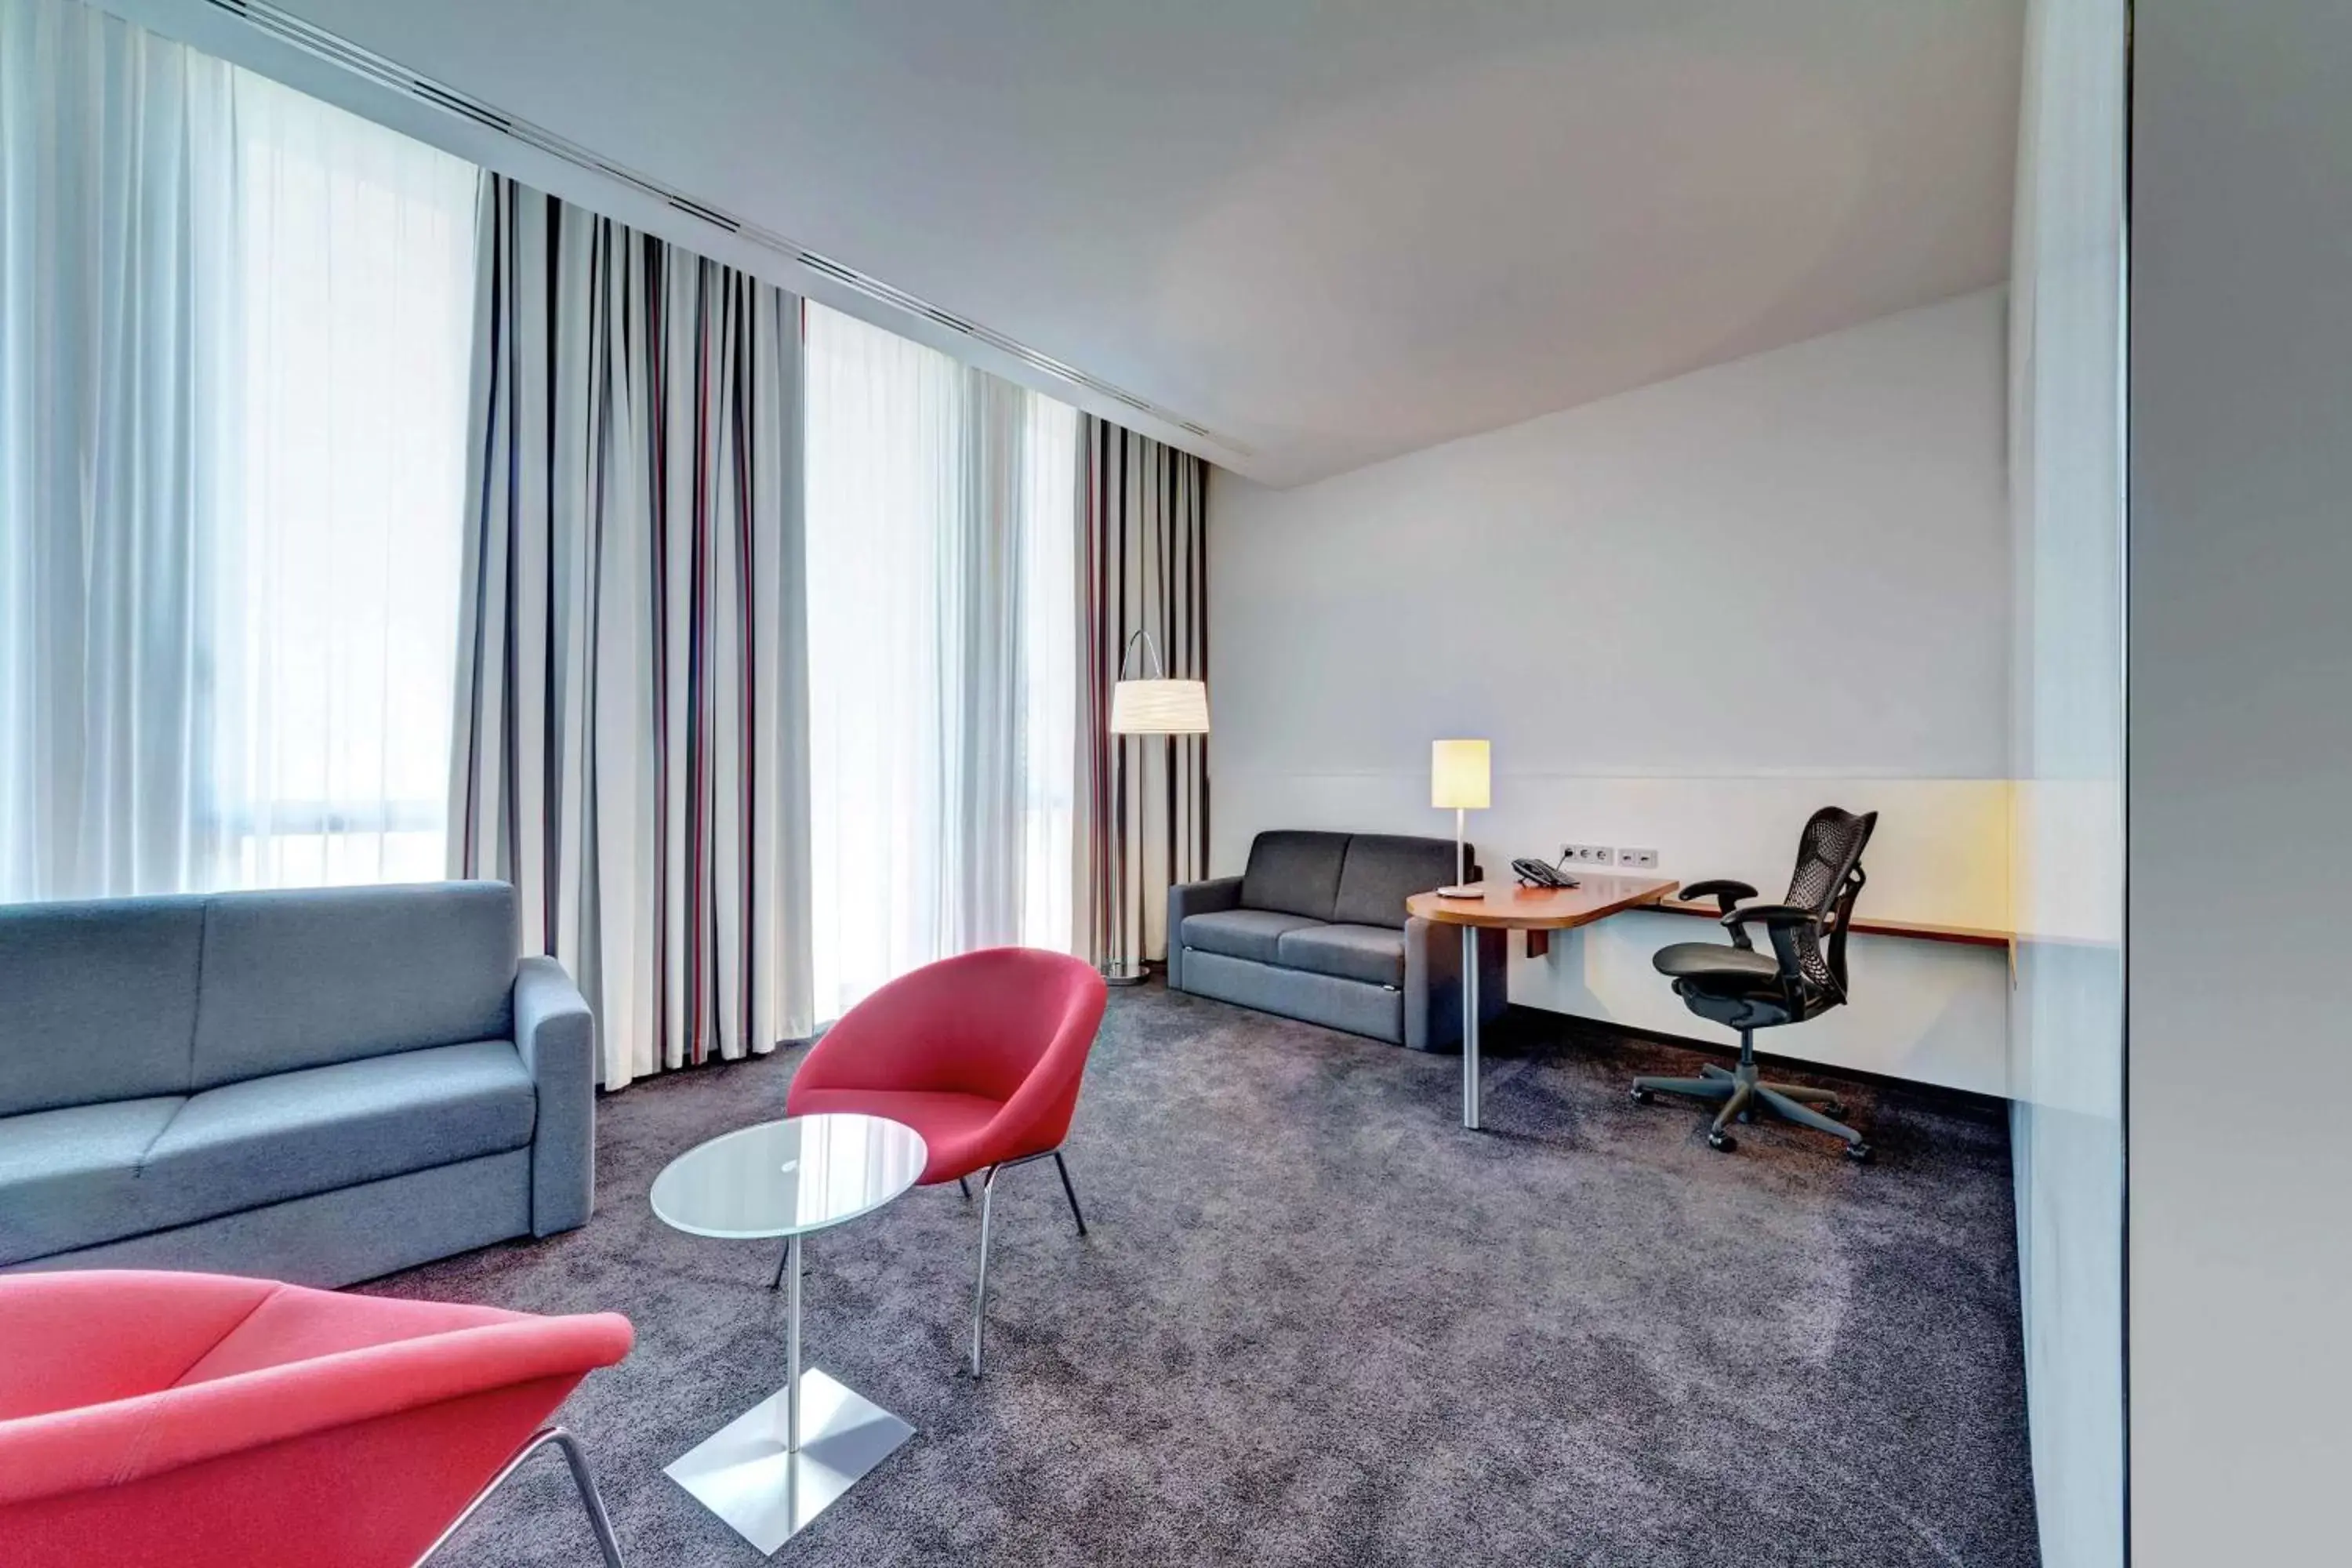 Bedroom, Seating Area in Hilton Garden Inn Stuttgart NeckarPark